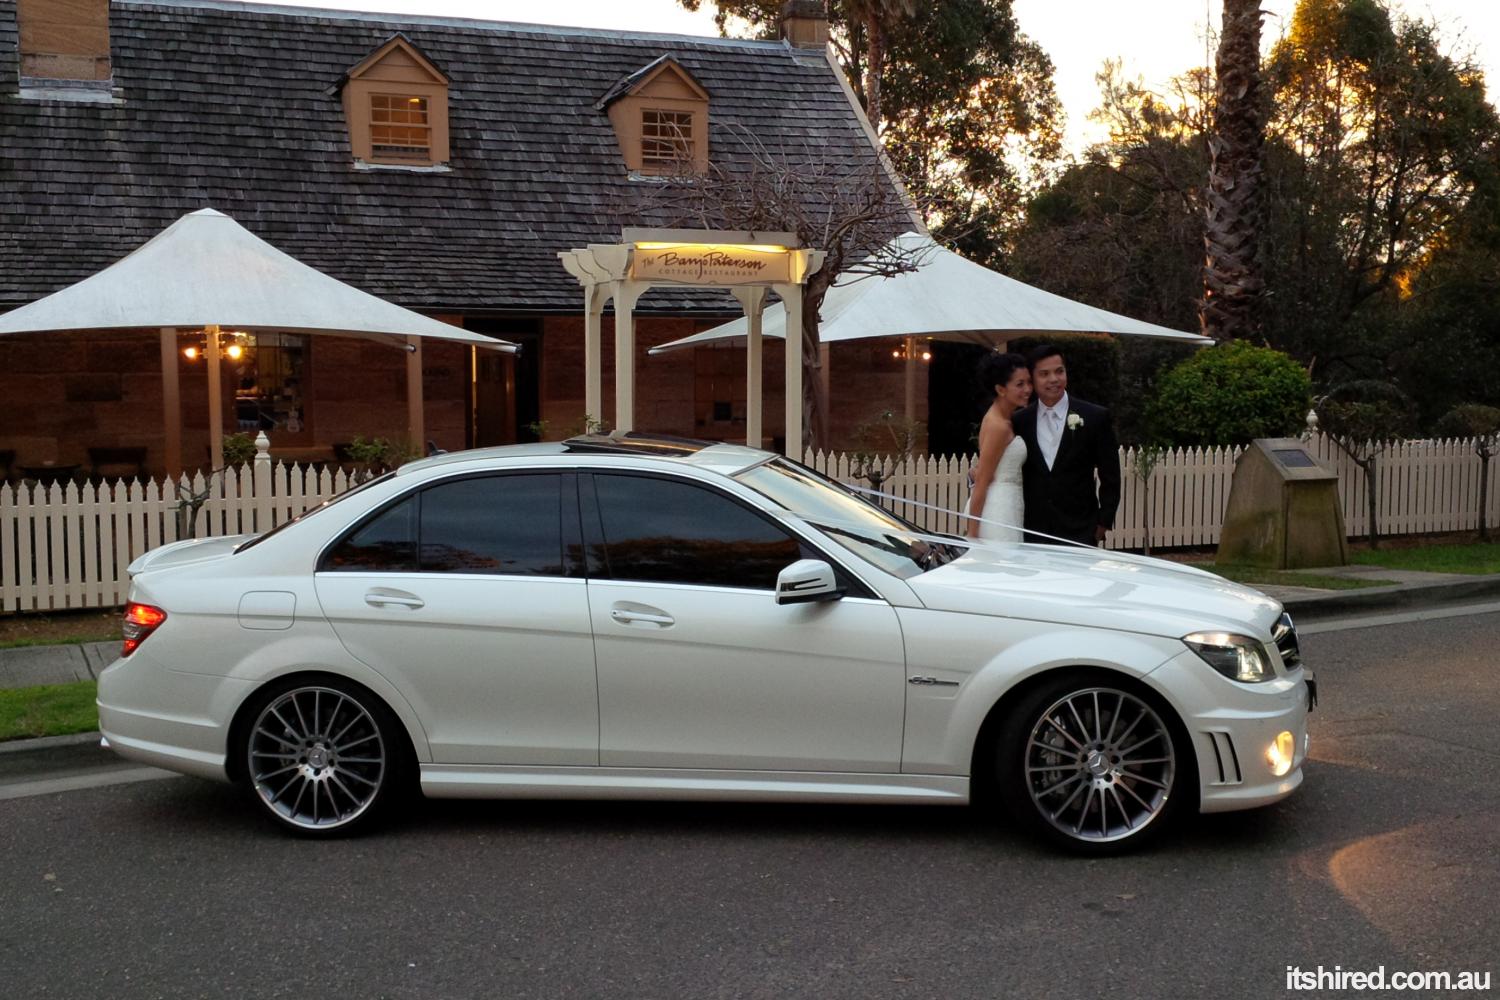 Classic mercedes wedding cars sydney #2